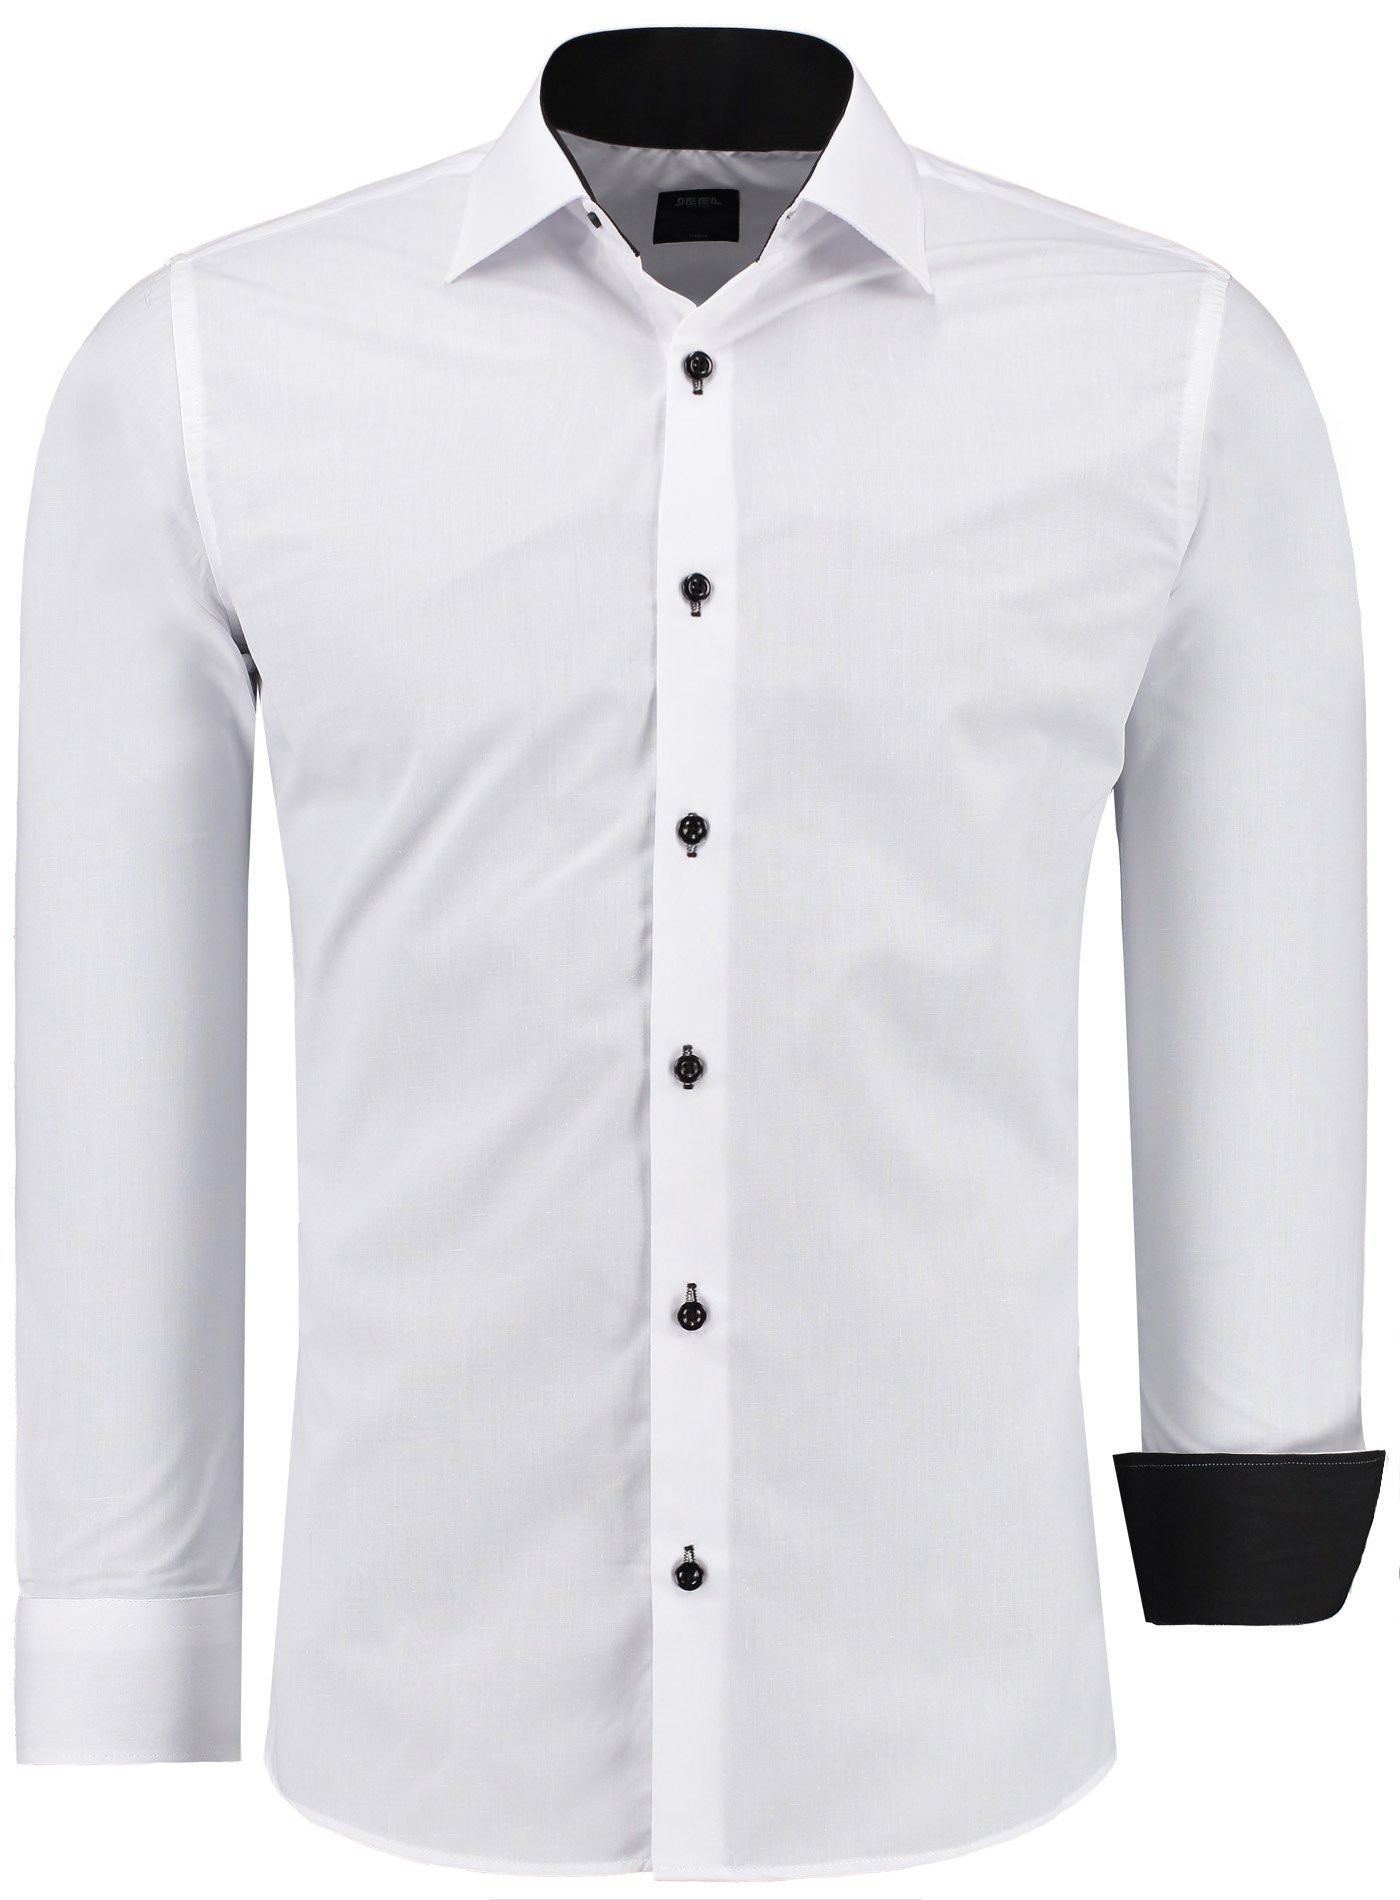 JEEL Businesshemd JH12105 Slim Fit Langarm Herren Hemd mit farblich abgesetzten Elementen, Langarm Kentkragen Uni Weiß/Schwarz